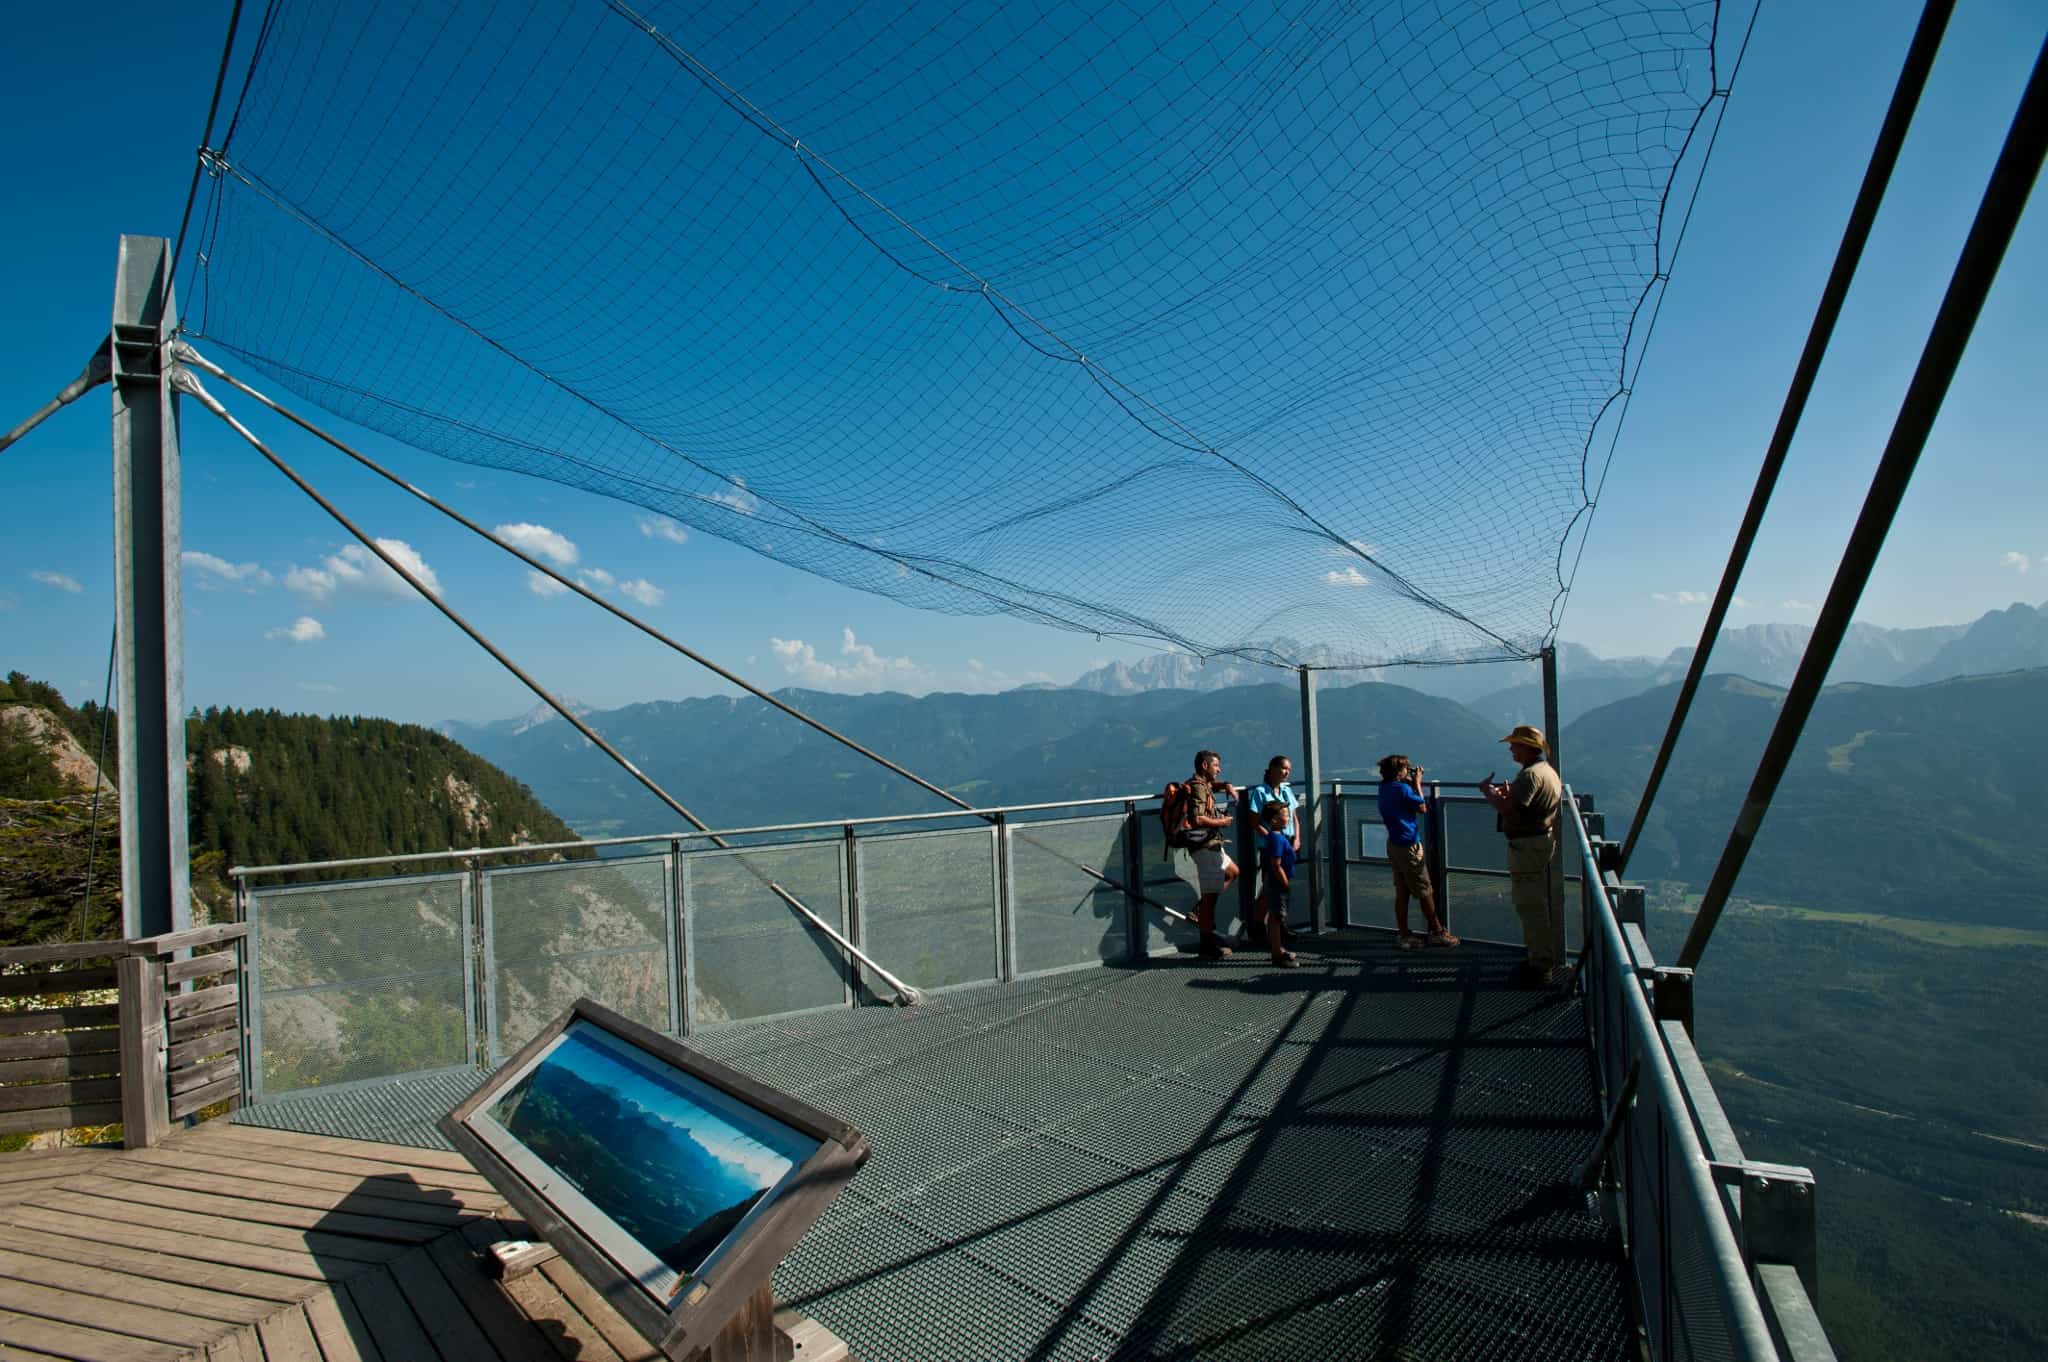 Skywalk im Naturpark Dobratsch entlang Villacher Alpenstraße - Tipp für Aktivitäten in der Urlaubsregion Villach in Kärnten, Österreich